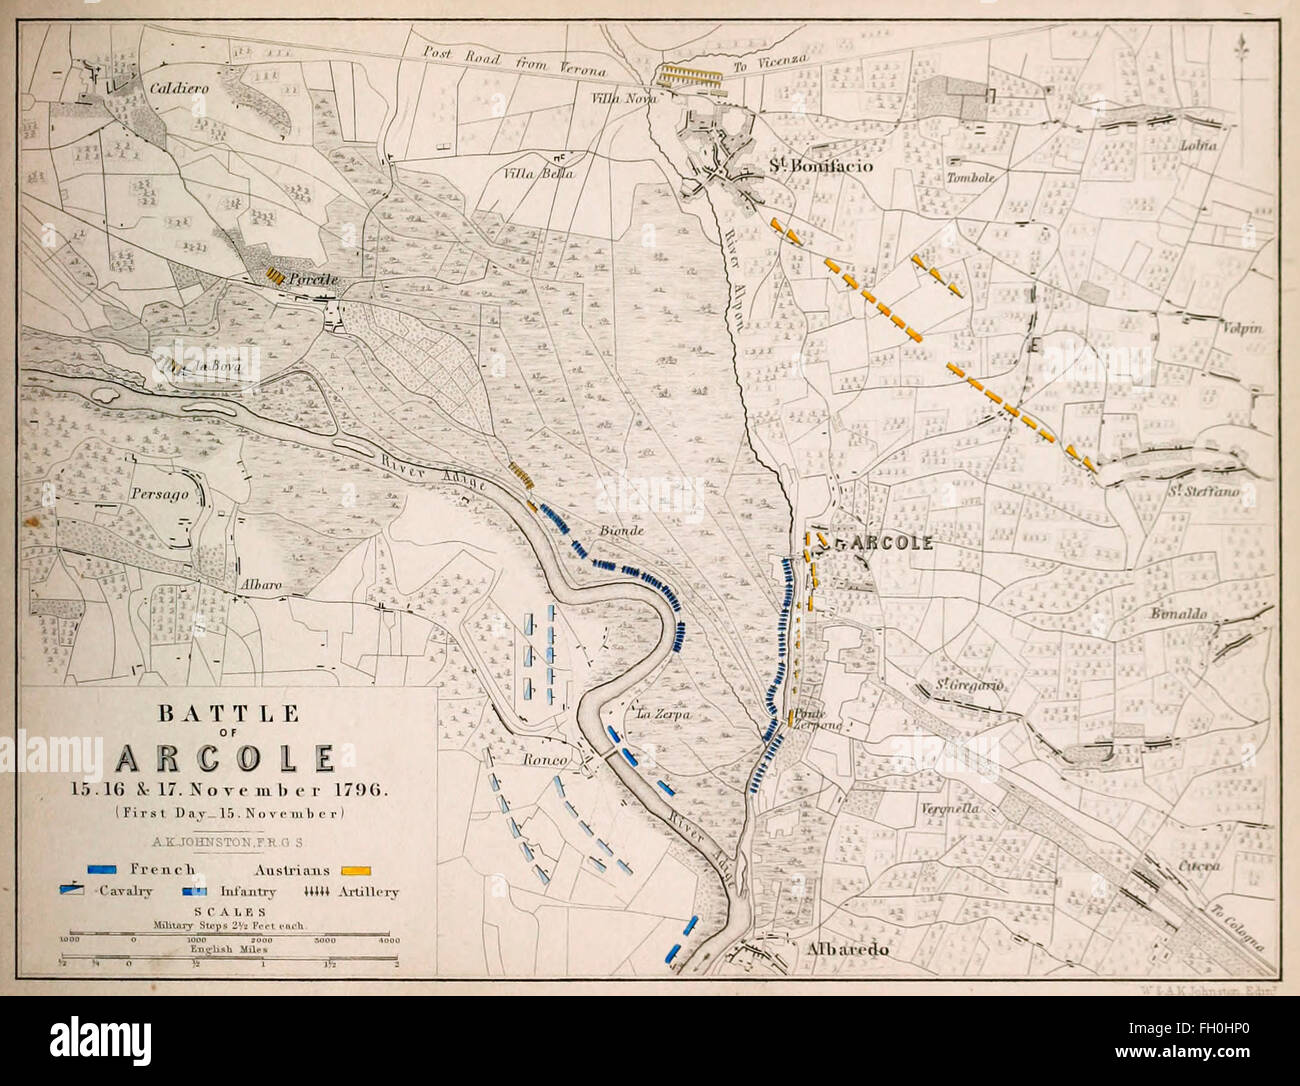 Karte der Schlacht von Arcole - 15, 16 und 17 November 1796. Die Schlacht von Arcole oder Schlacht von Arcola (15.-17. November 1796) war eine Schlacht zwischen französischen und österreichischen 25 Kilometer (16 Meilen) südöstlich von Verona während des ersten Koalitionskrieges, ein Teil von französische revolutionäre Kriege zwingt. Stockfoto